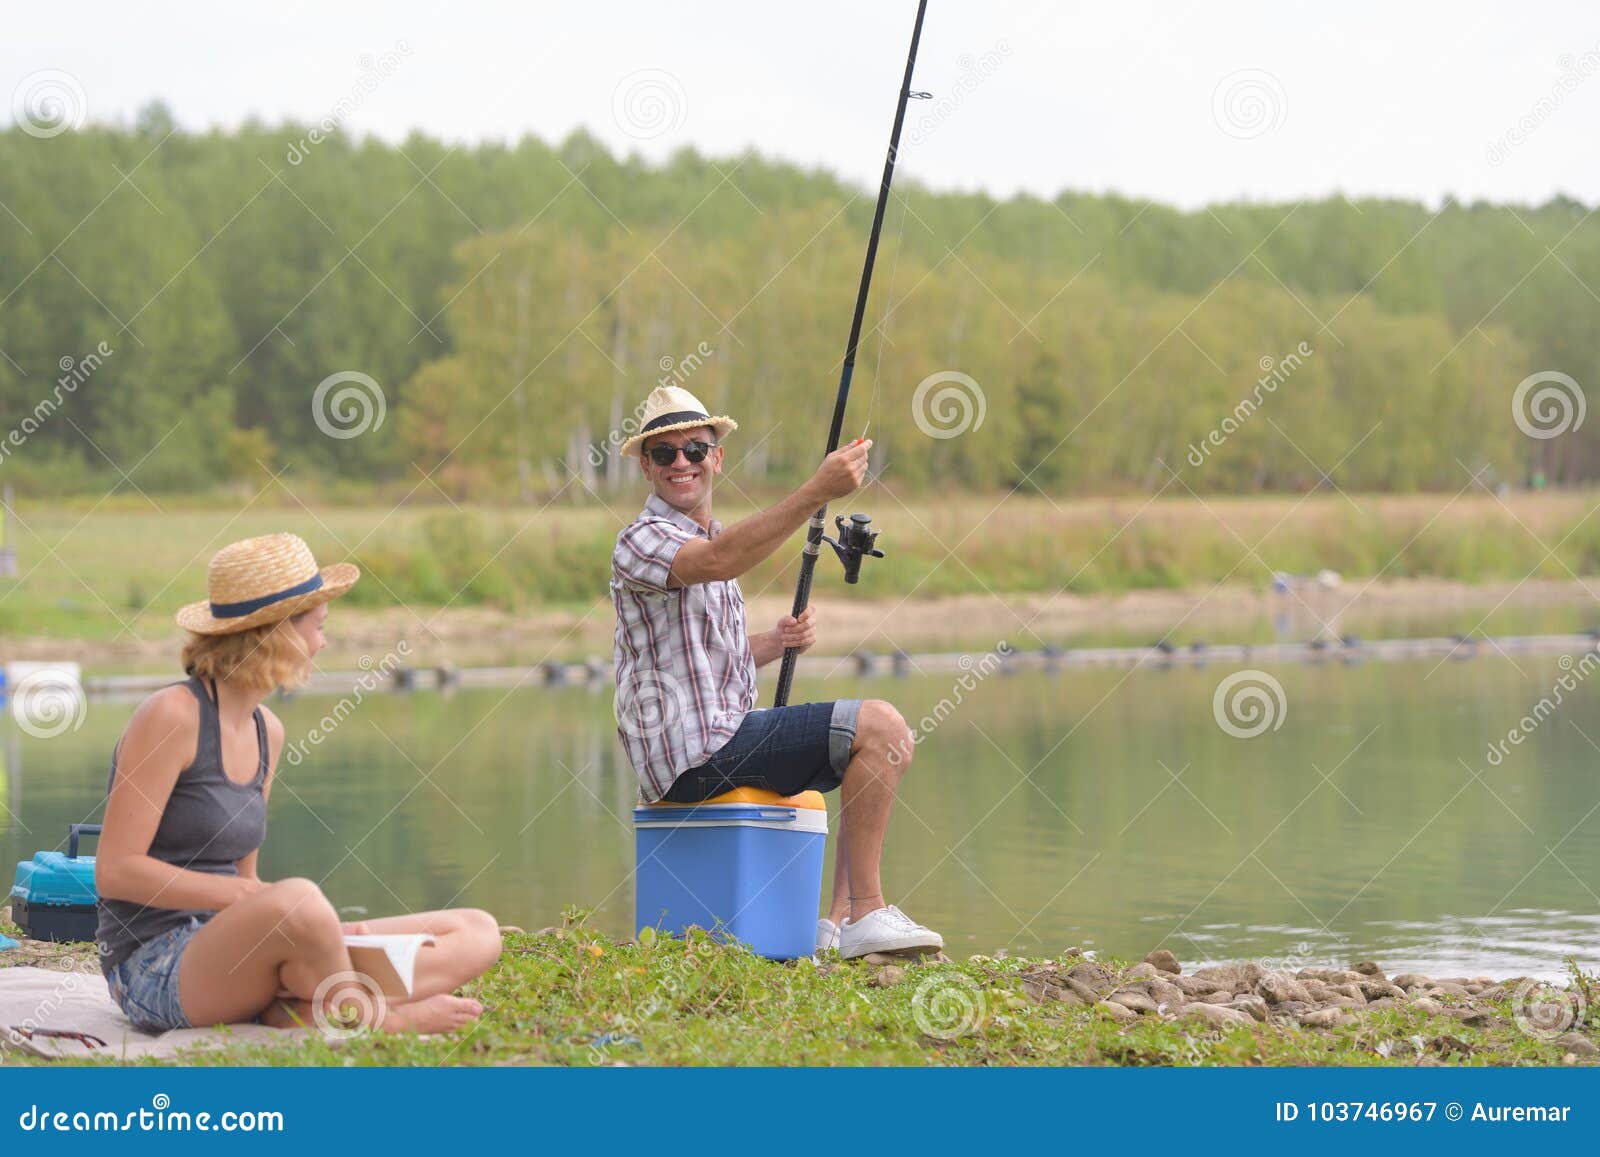 Ловля парами. Парочка на рыбалке. Супружеская пара на рыбалке. Парочка на рыбалке осенью. Река пара рыбалка.